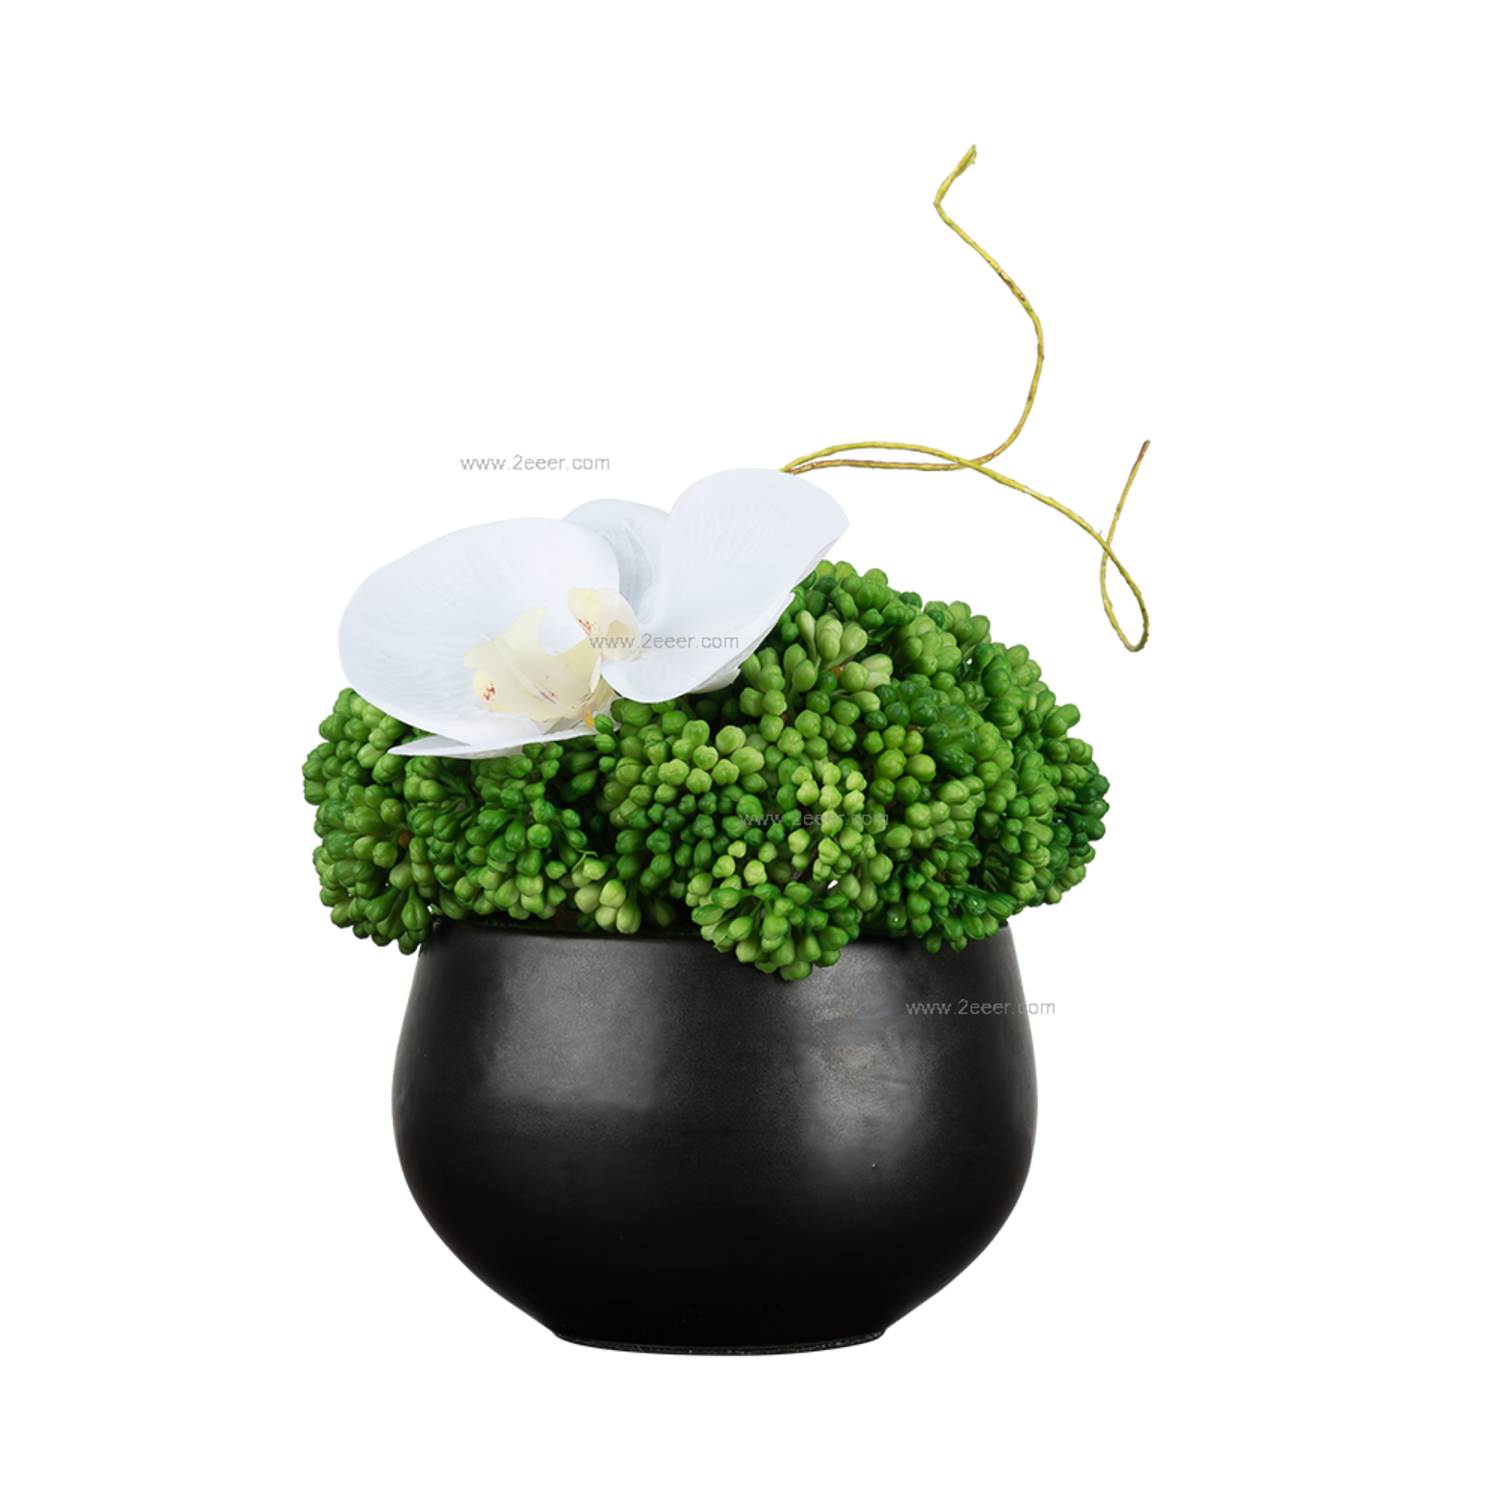 绿植-现代中式简约-仿真植物+陶瓷